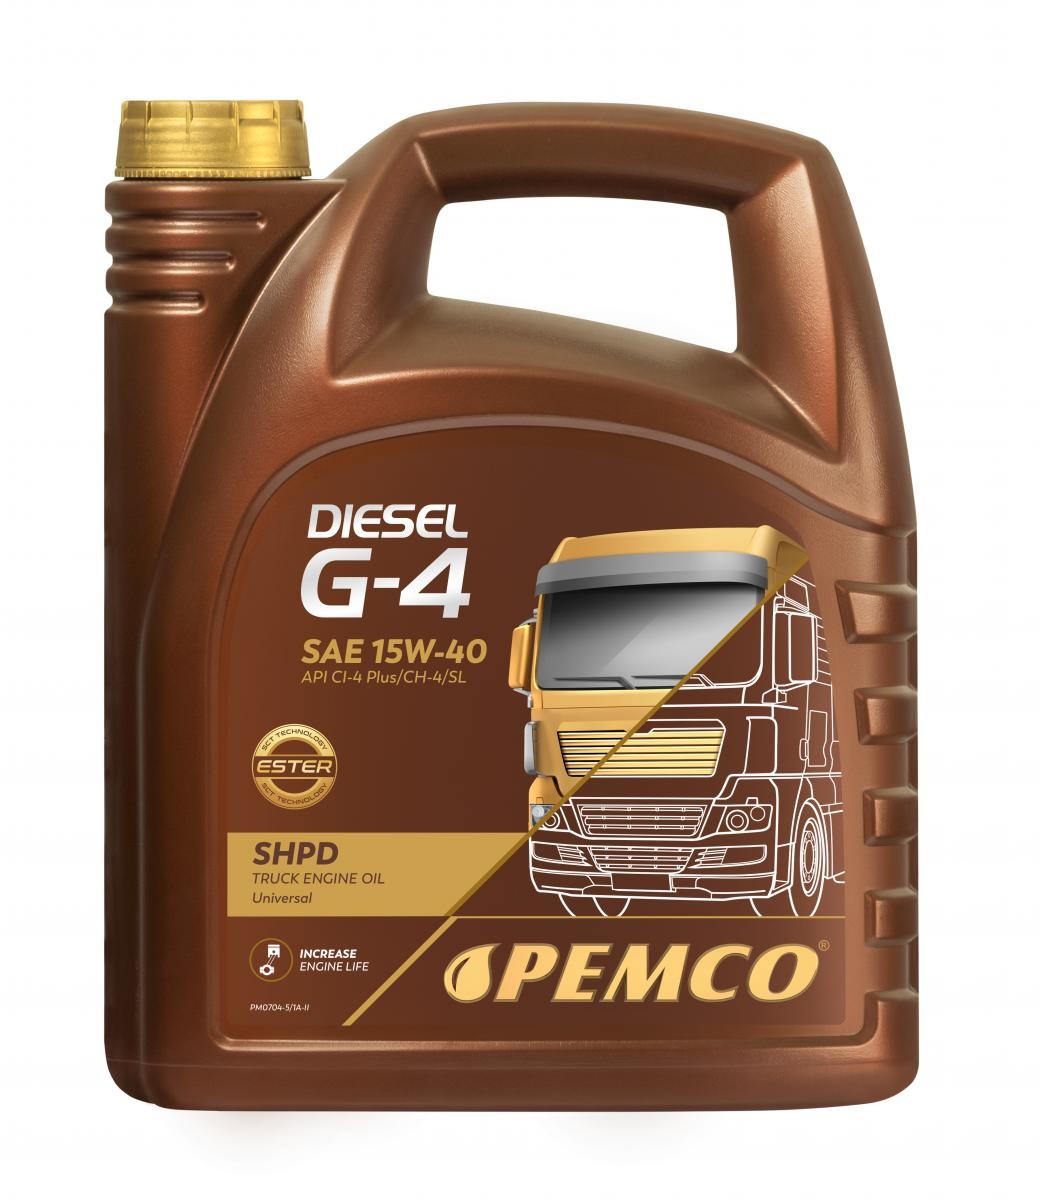 Comprare PM0704-5 PEMCO Truck SHPD, DIESEL G-4 SHPD 15W-40, 5l, Olio minerale Olio motore PM0704-5 poco costoso